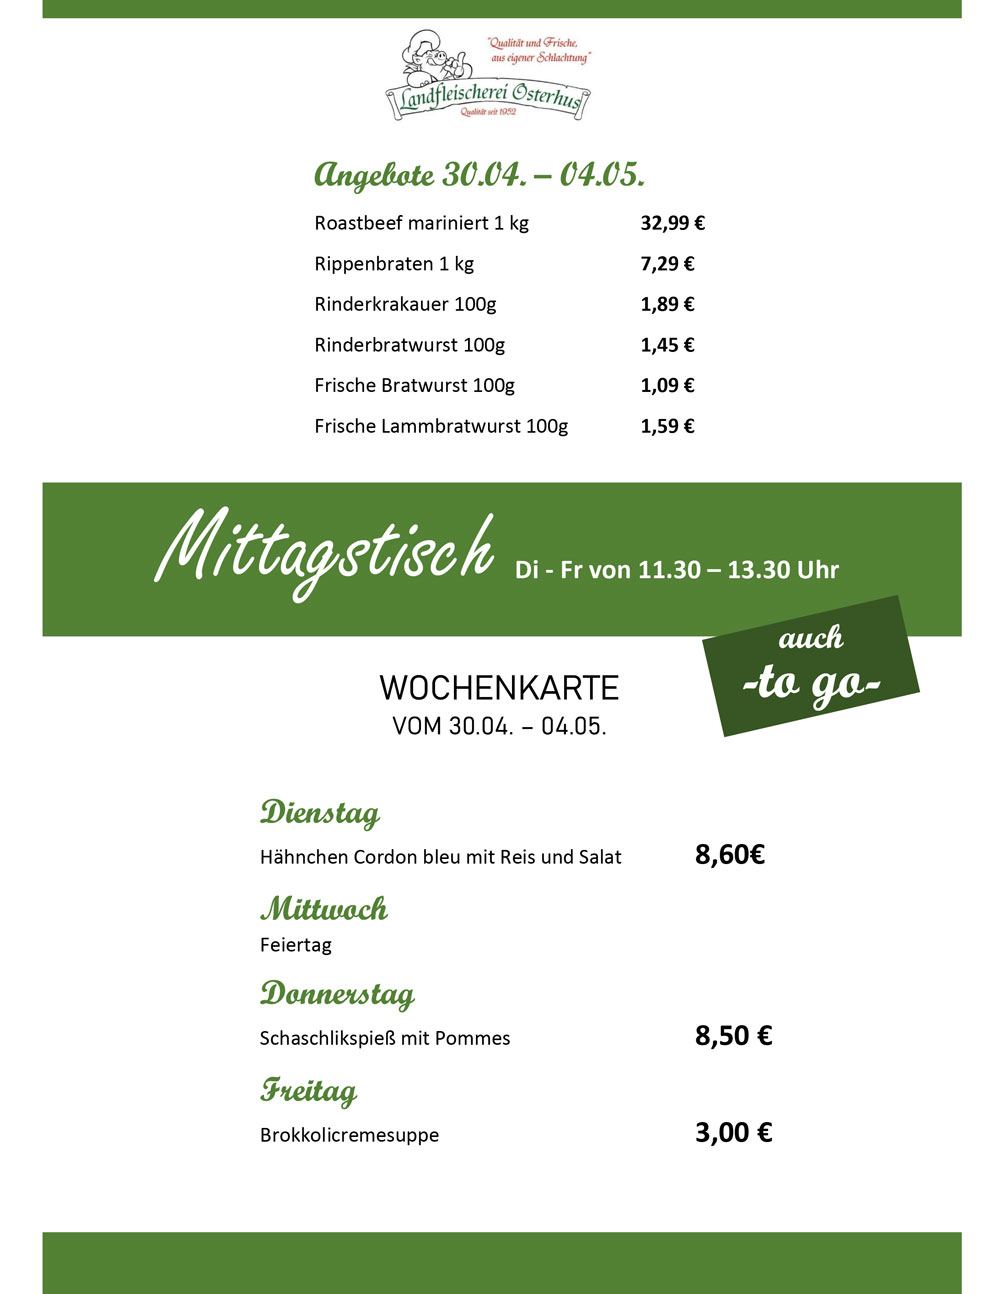 Landfleischerei Osterhus GmbH - Angebote & Mittagstisch